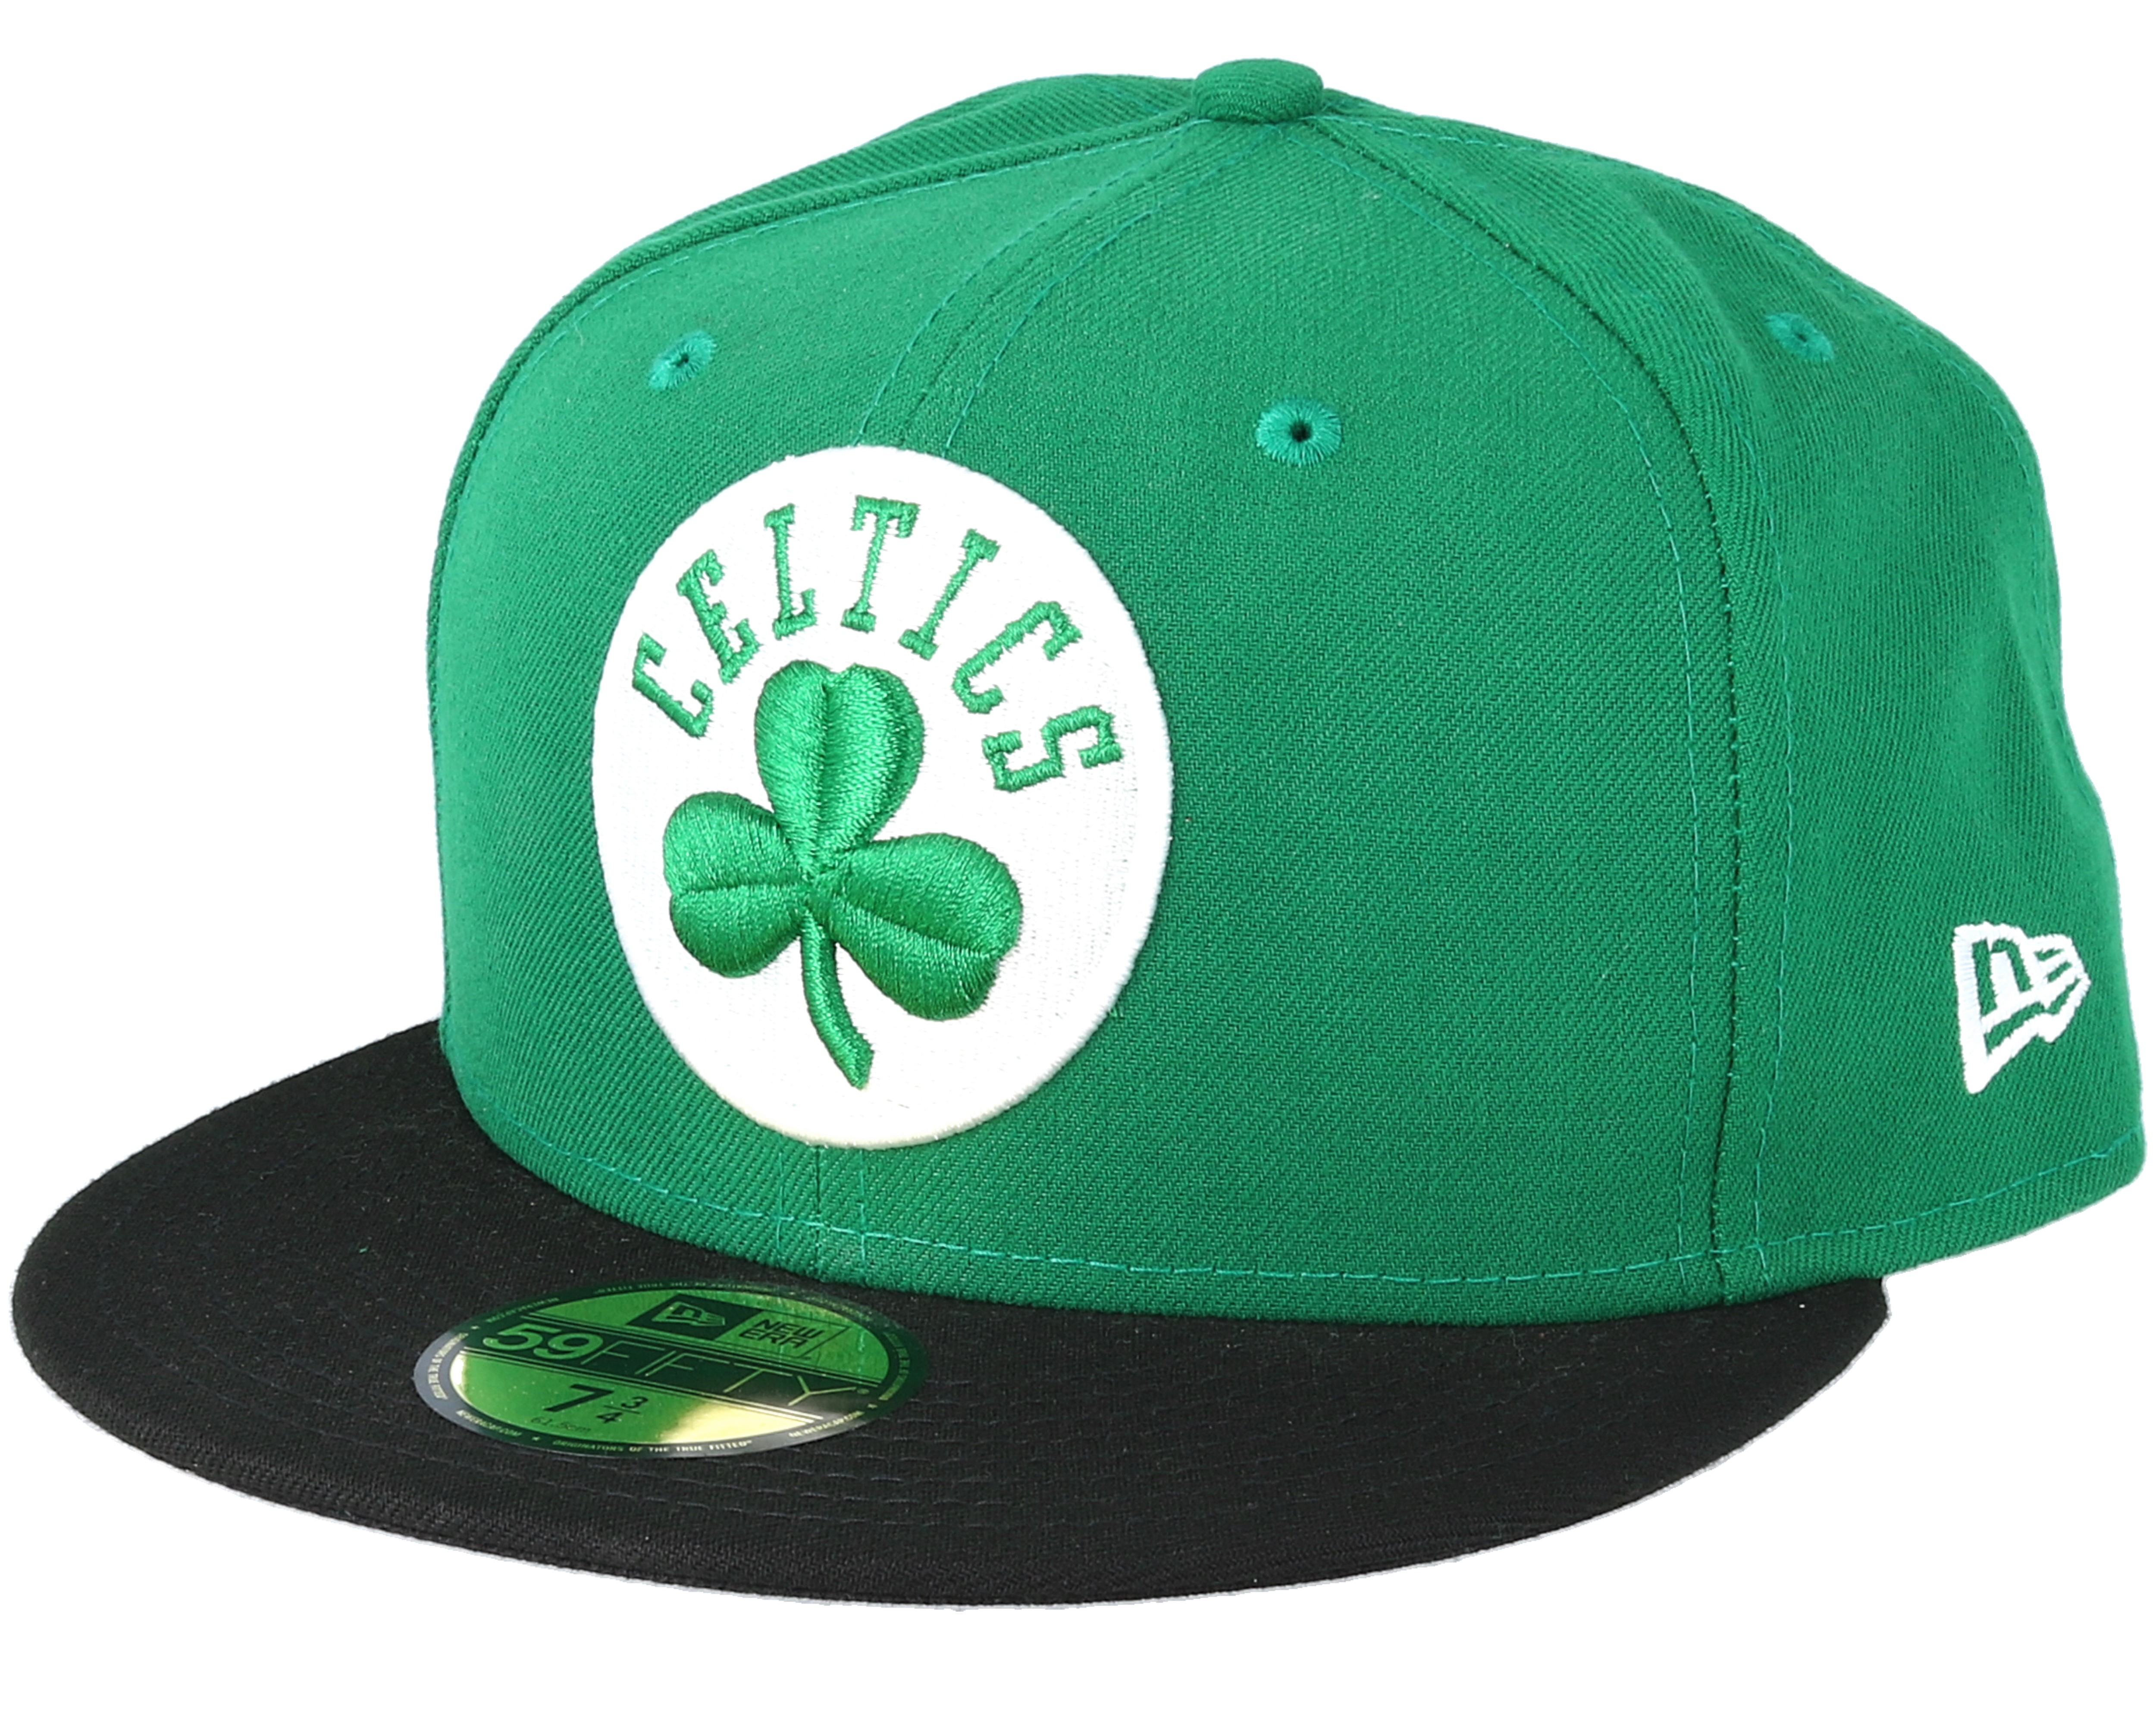 Mensuk Boston Celtics Clover Bruins Patriots Celtics Red Sox Baseball Cap Black